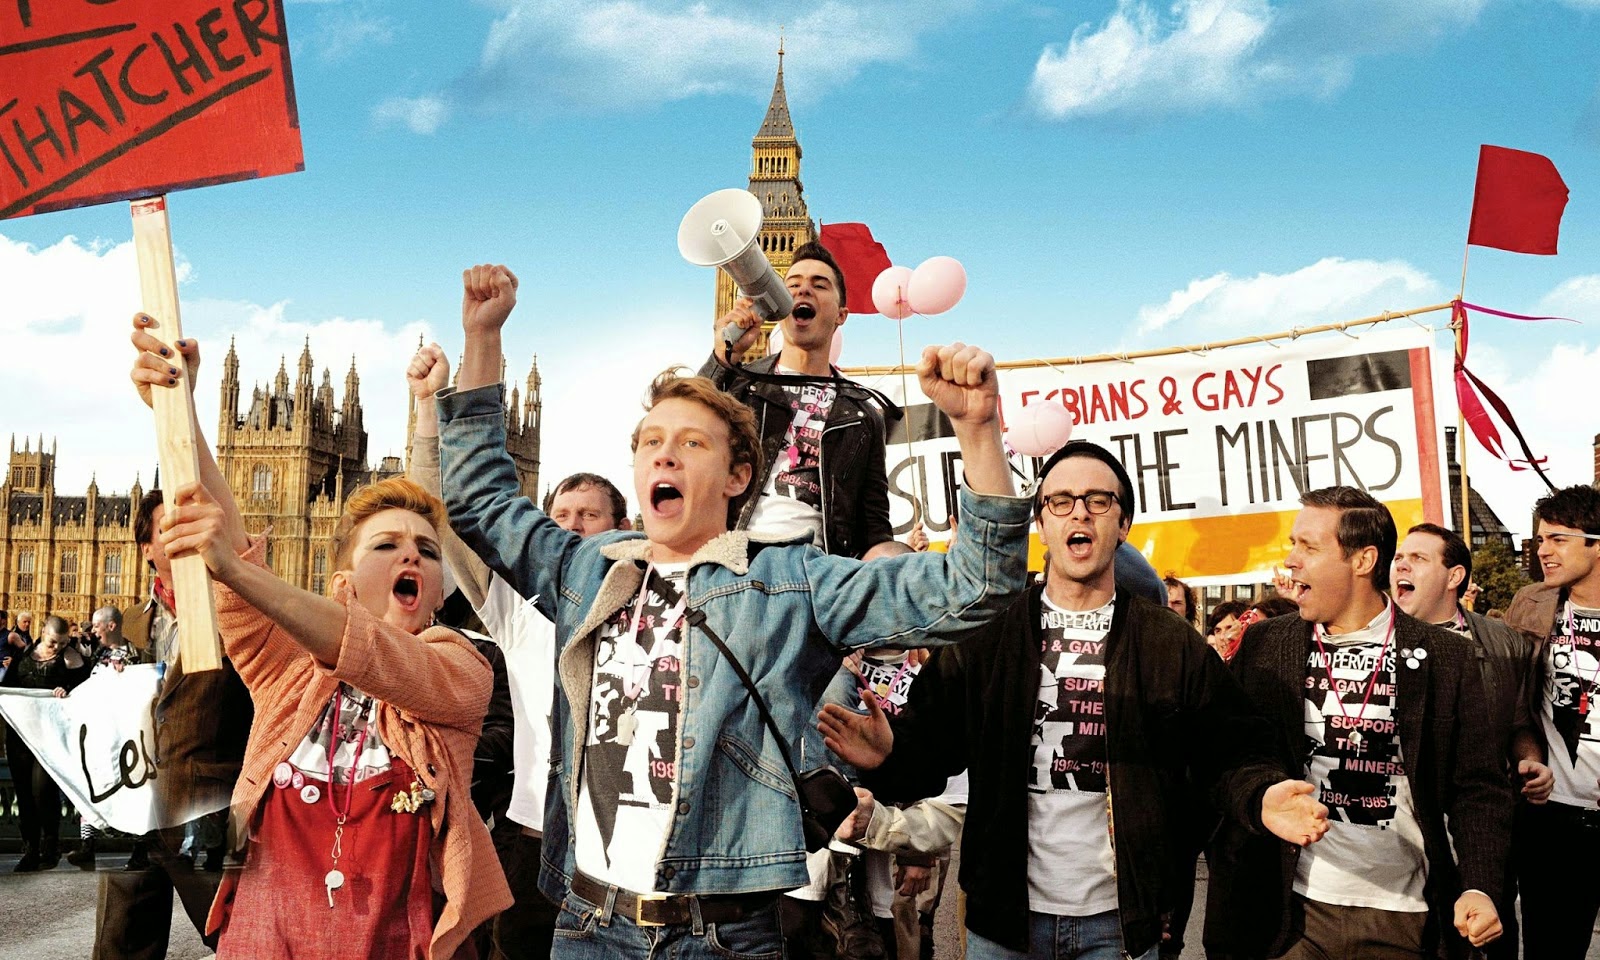 I migliori film gay del 2014: la nostra classifica [parte 1] - Pride cinema 2014 - Gay.it